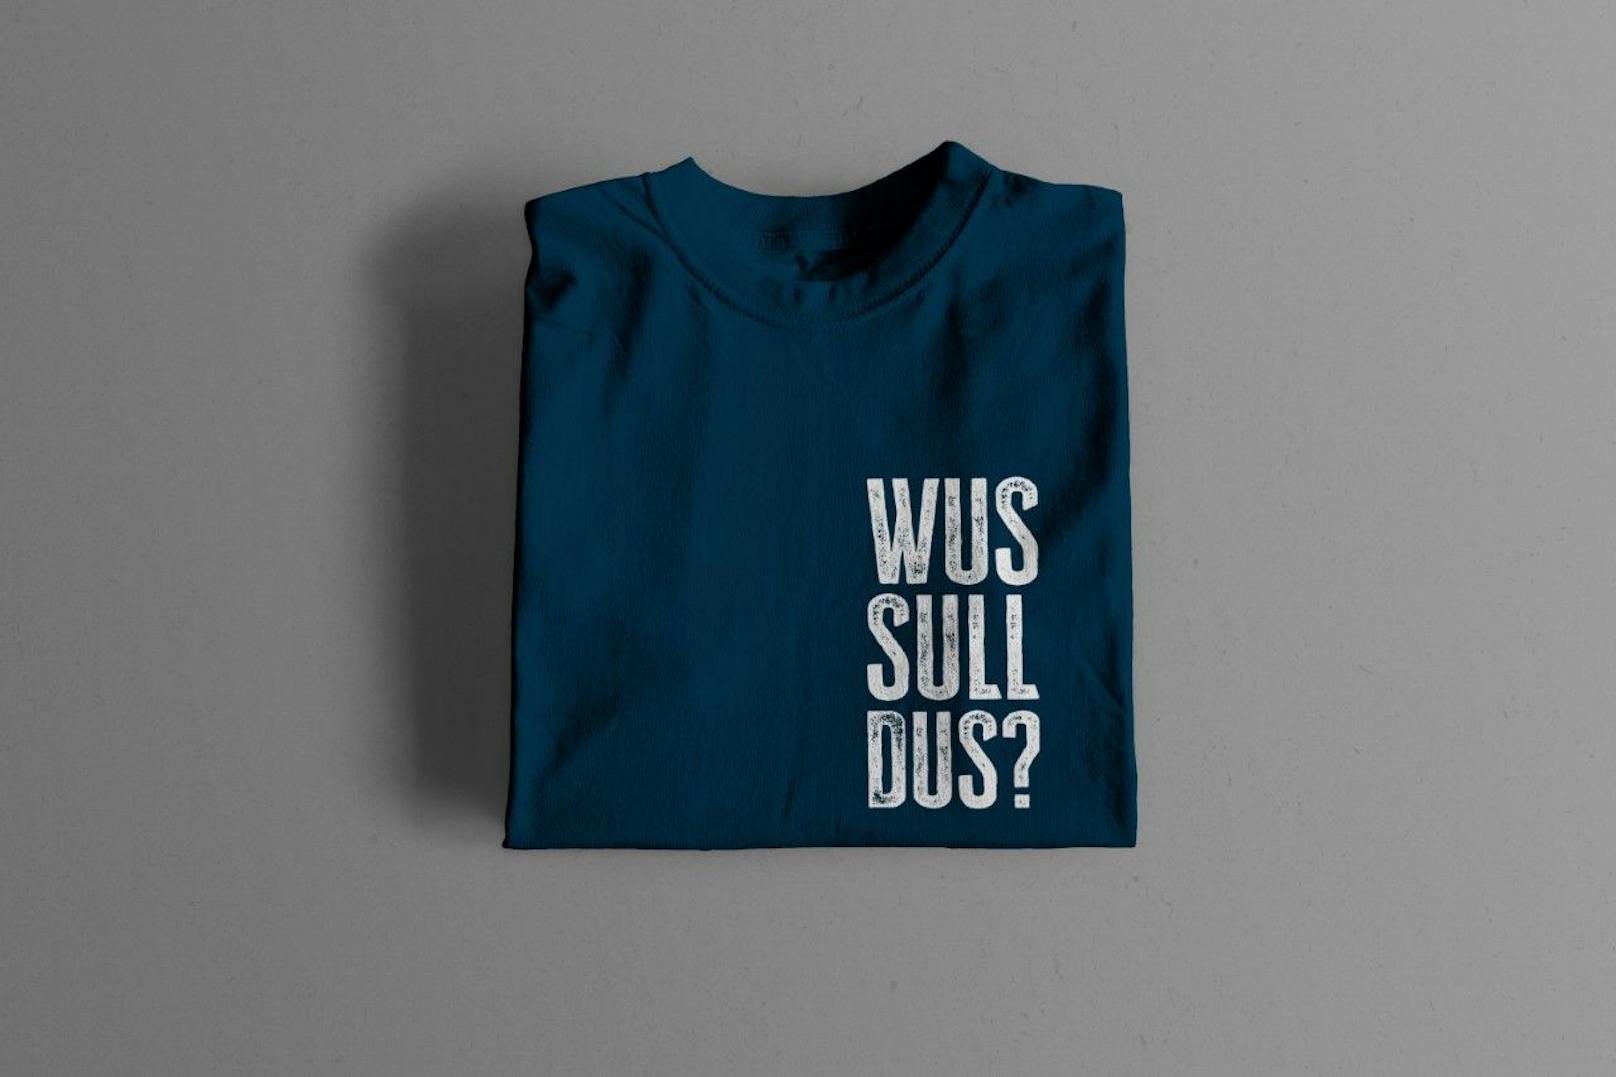 Die T-Shirts mit dem Spruch "Wus sull dus?" sind bis Jänner vergriffen. Mit <em>"Heute"</em> kannst du ein signiertes T-Shirt gewinnen.